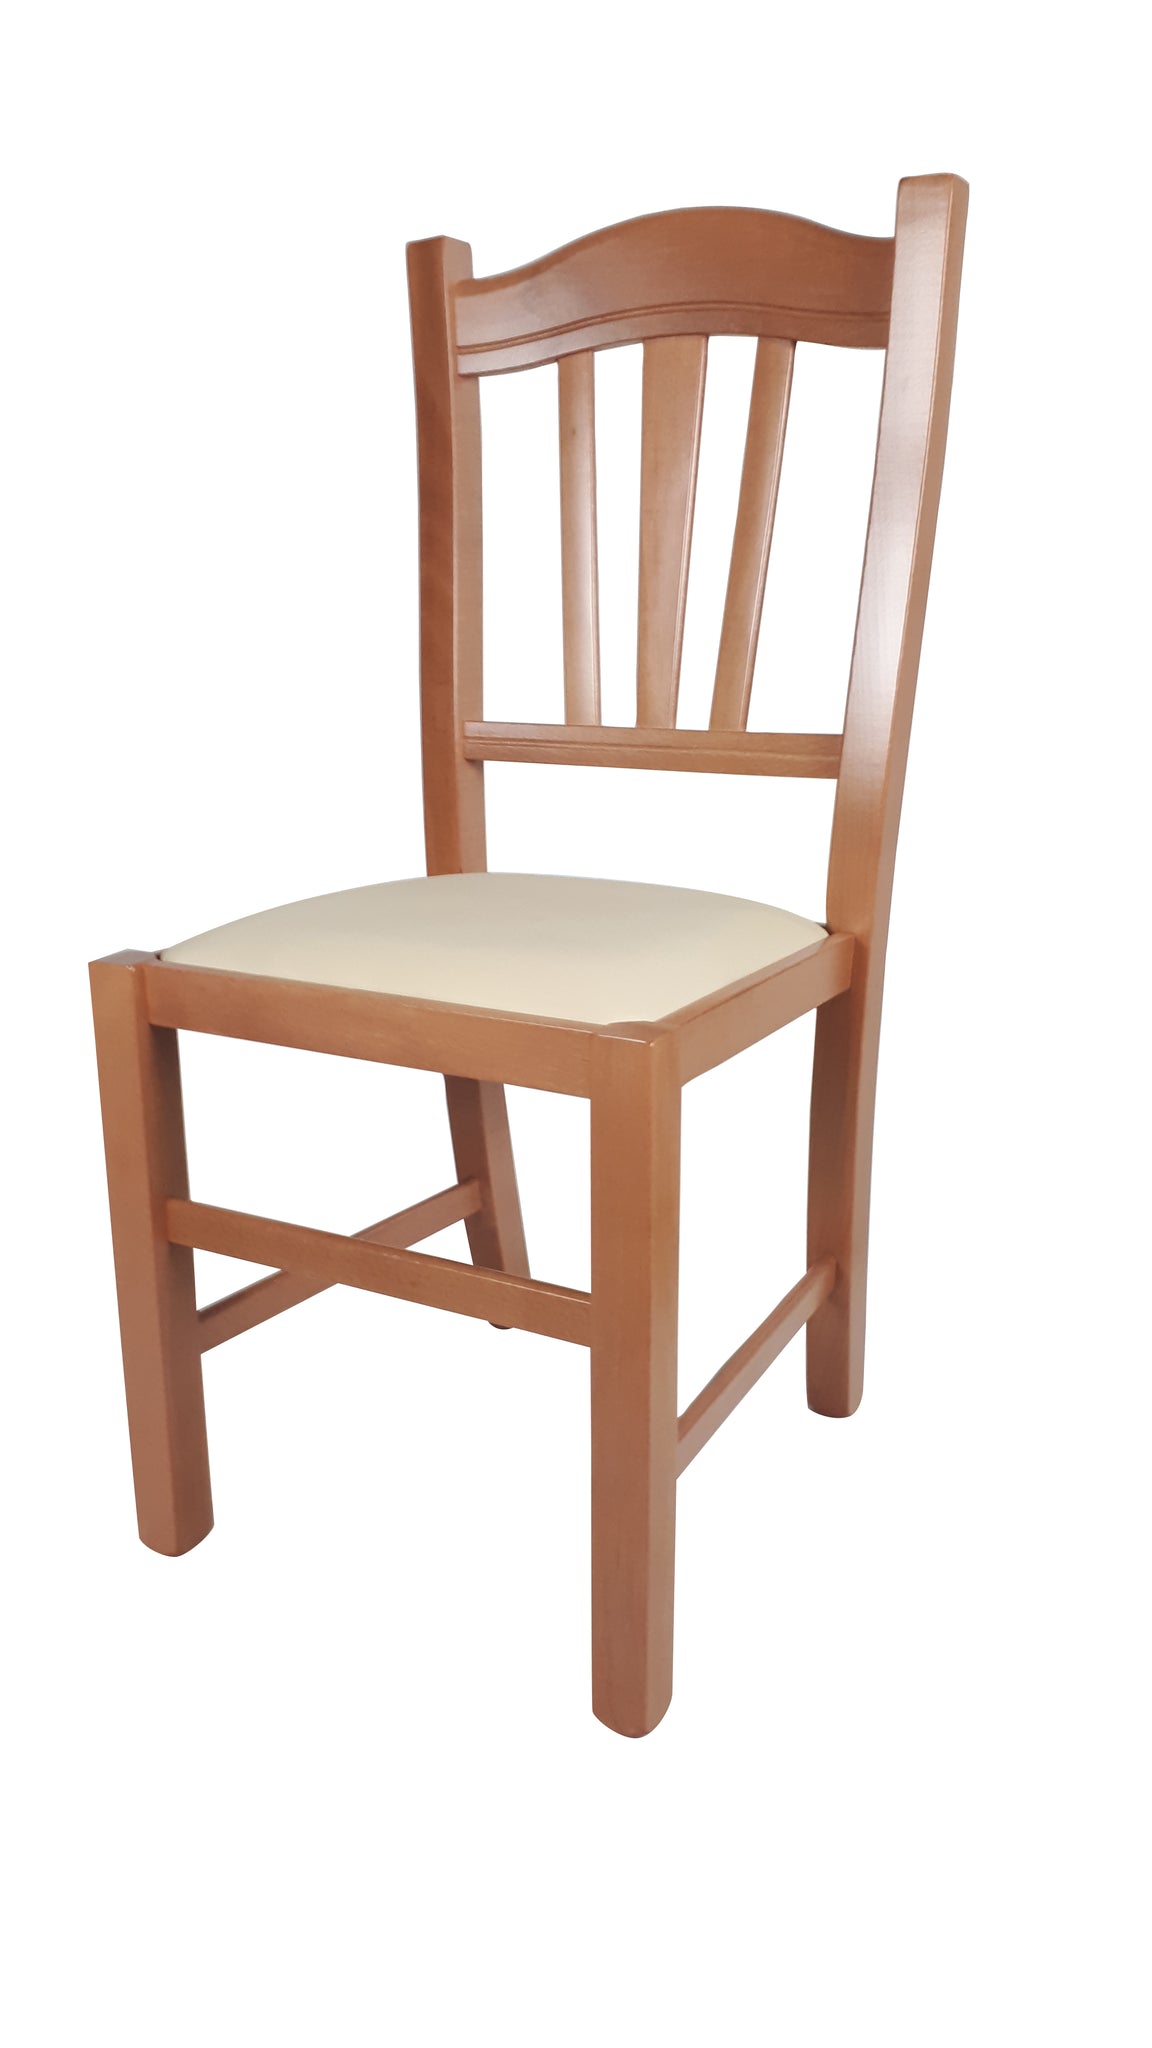 Acquista online sedie in legno in sconto fino al 70%